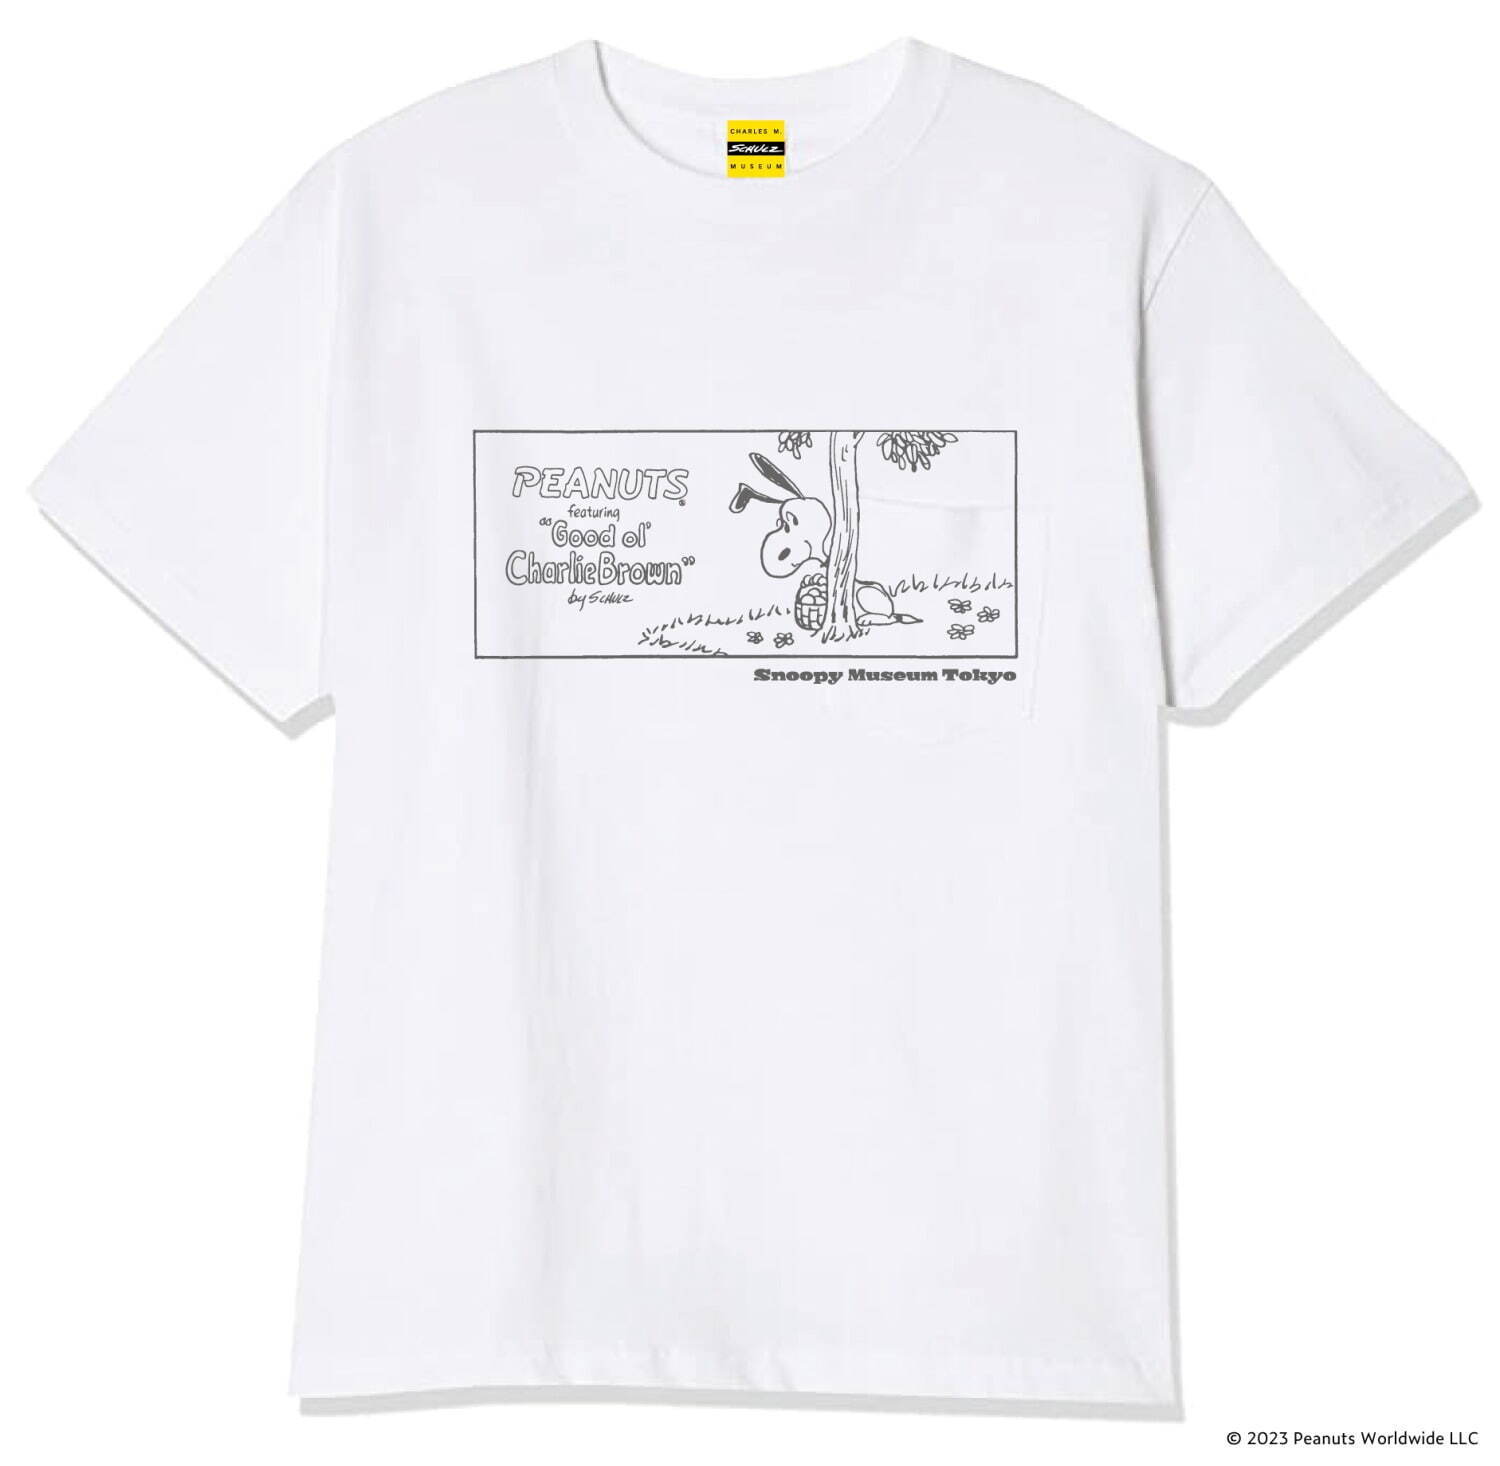 「スヌーピーミュージアムのハッピー・イースター」イベントオリジナルTシャツ 4,180円(サイズM、L)